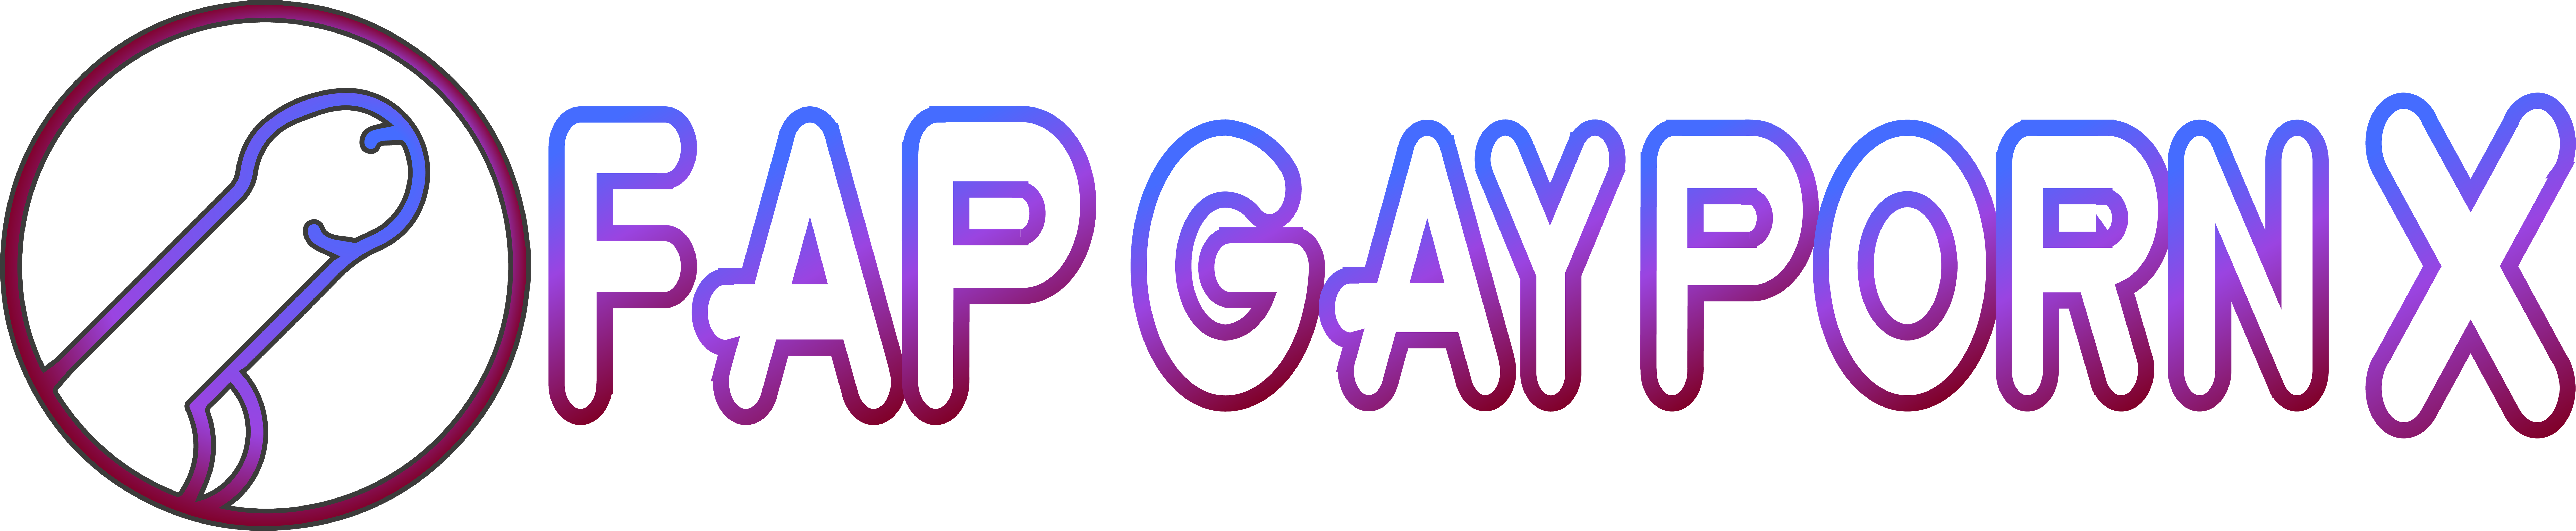 Fap Gay Porn X